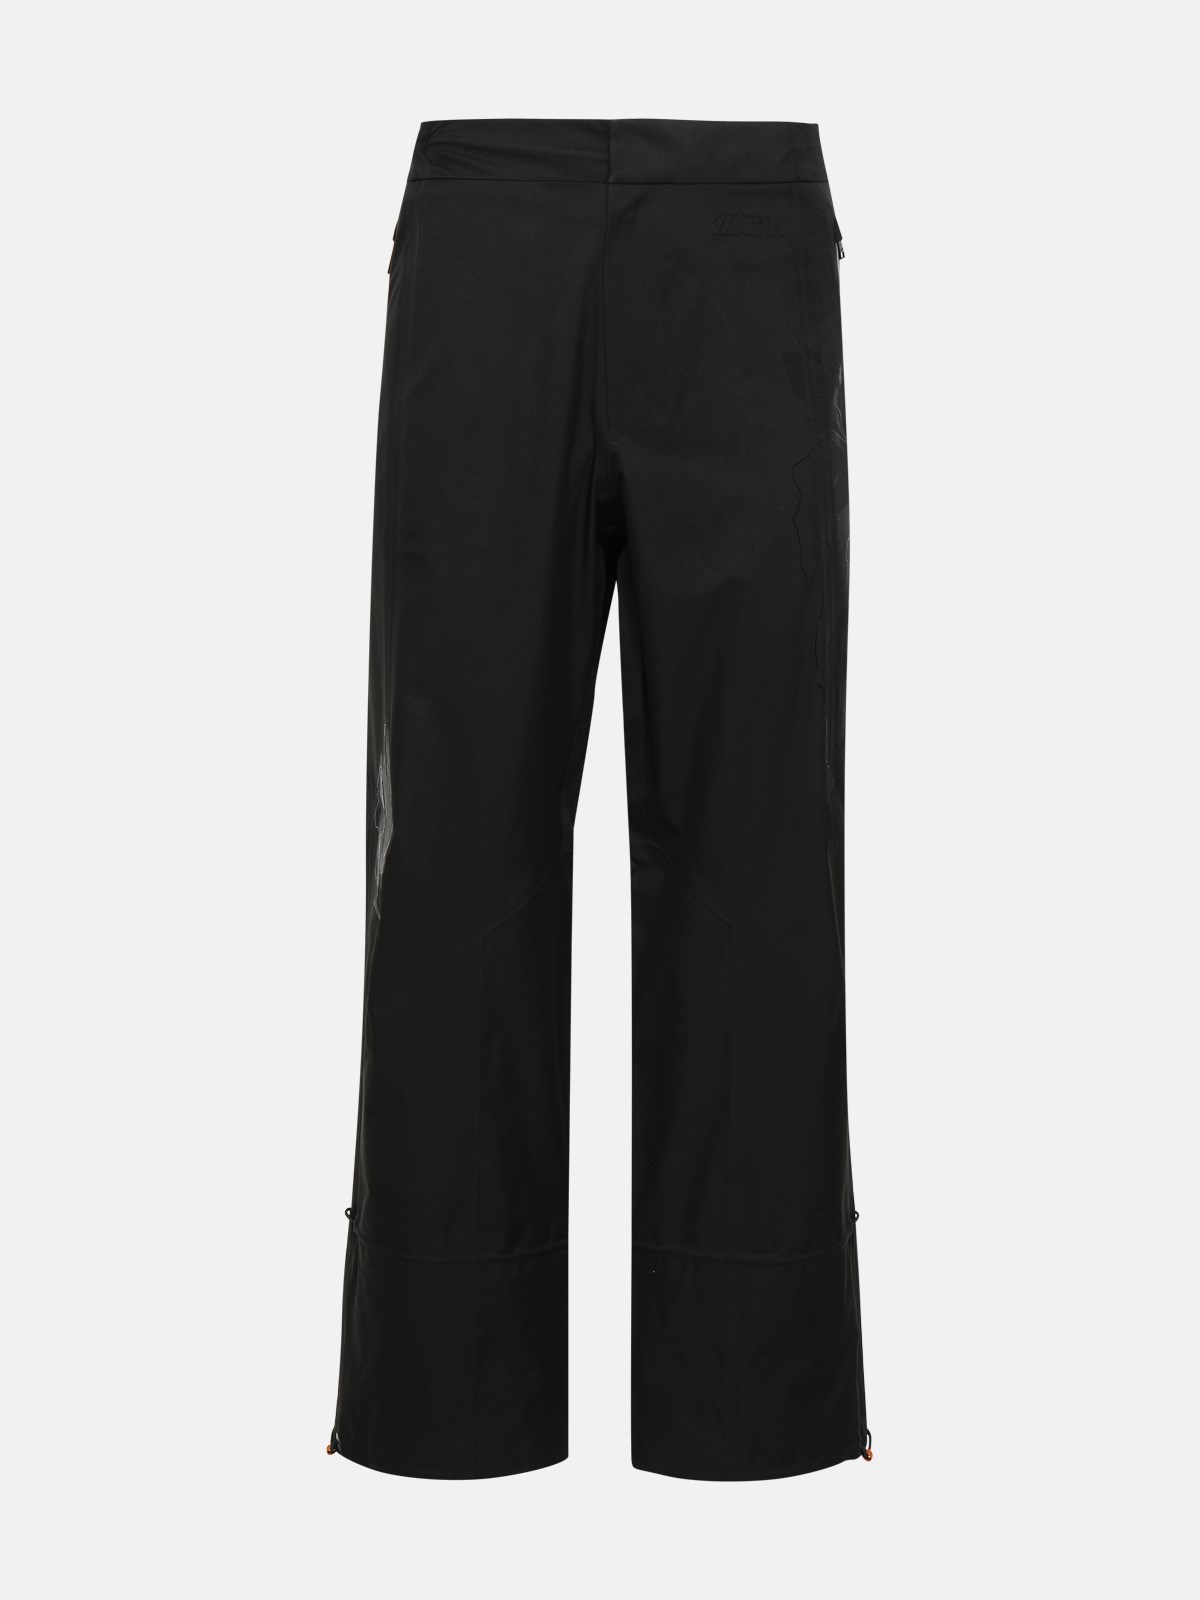 Zegna Black Nylon Tech Pants